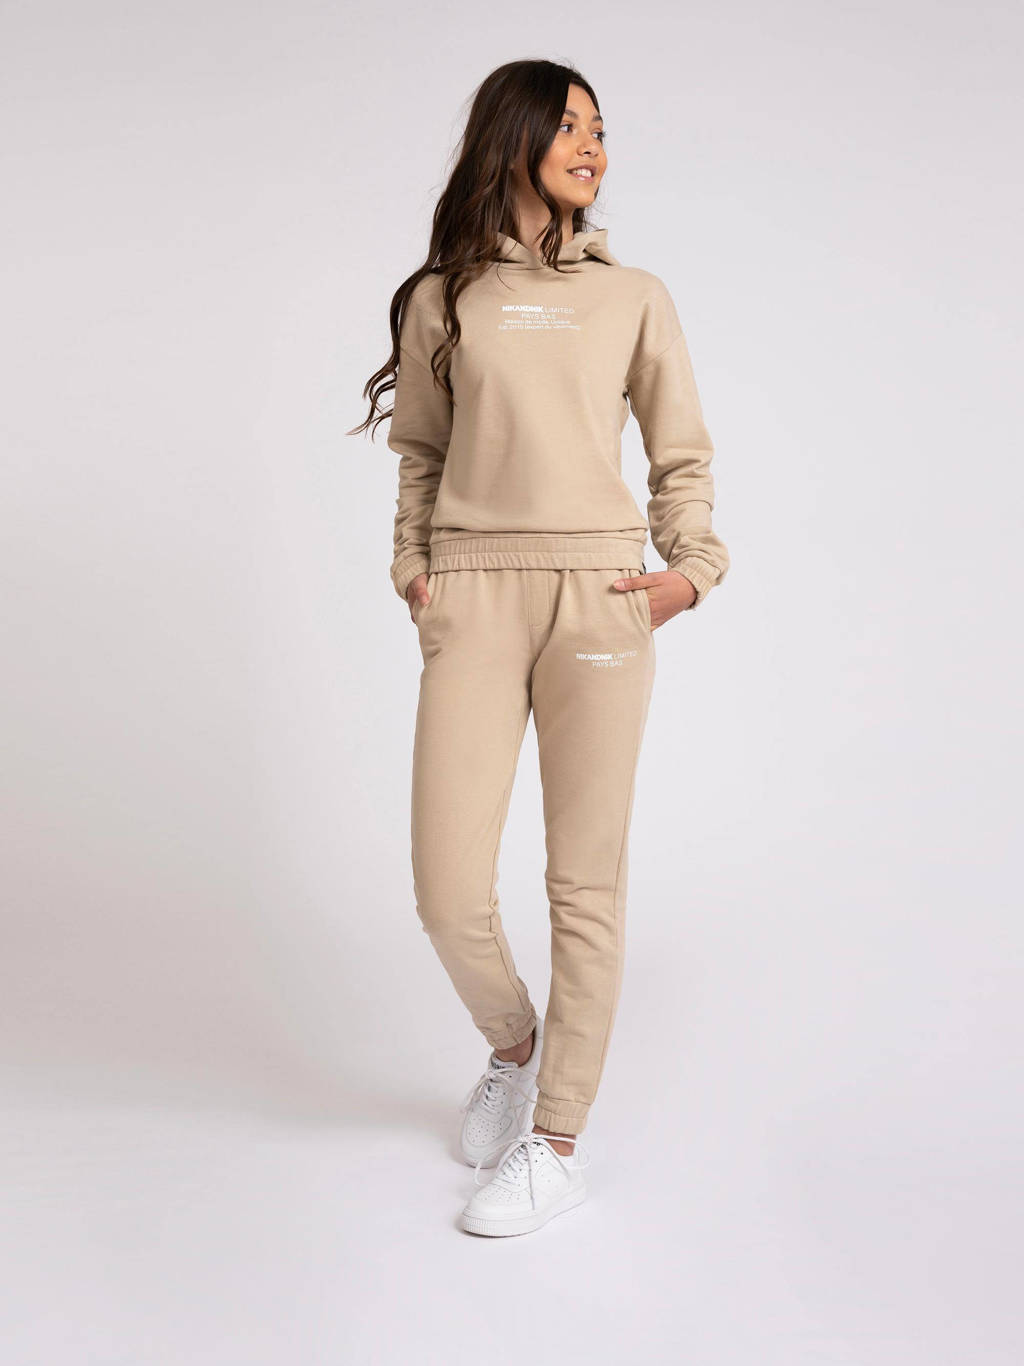 Beige meisjes NIK&NIK hoodie Limited van duurzame sweatstof met logo dessin, lange mouwen en capuchon